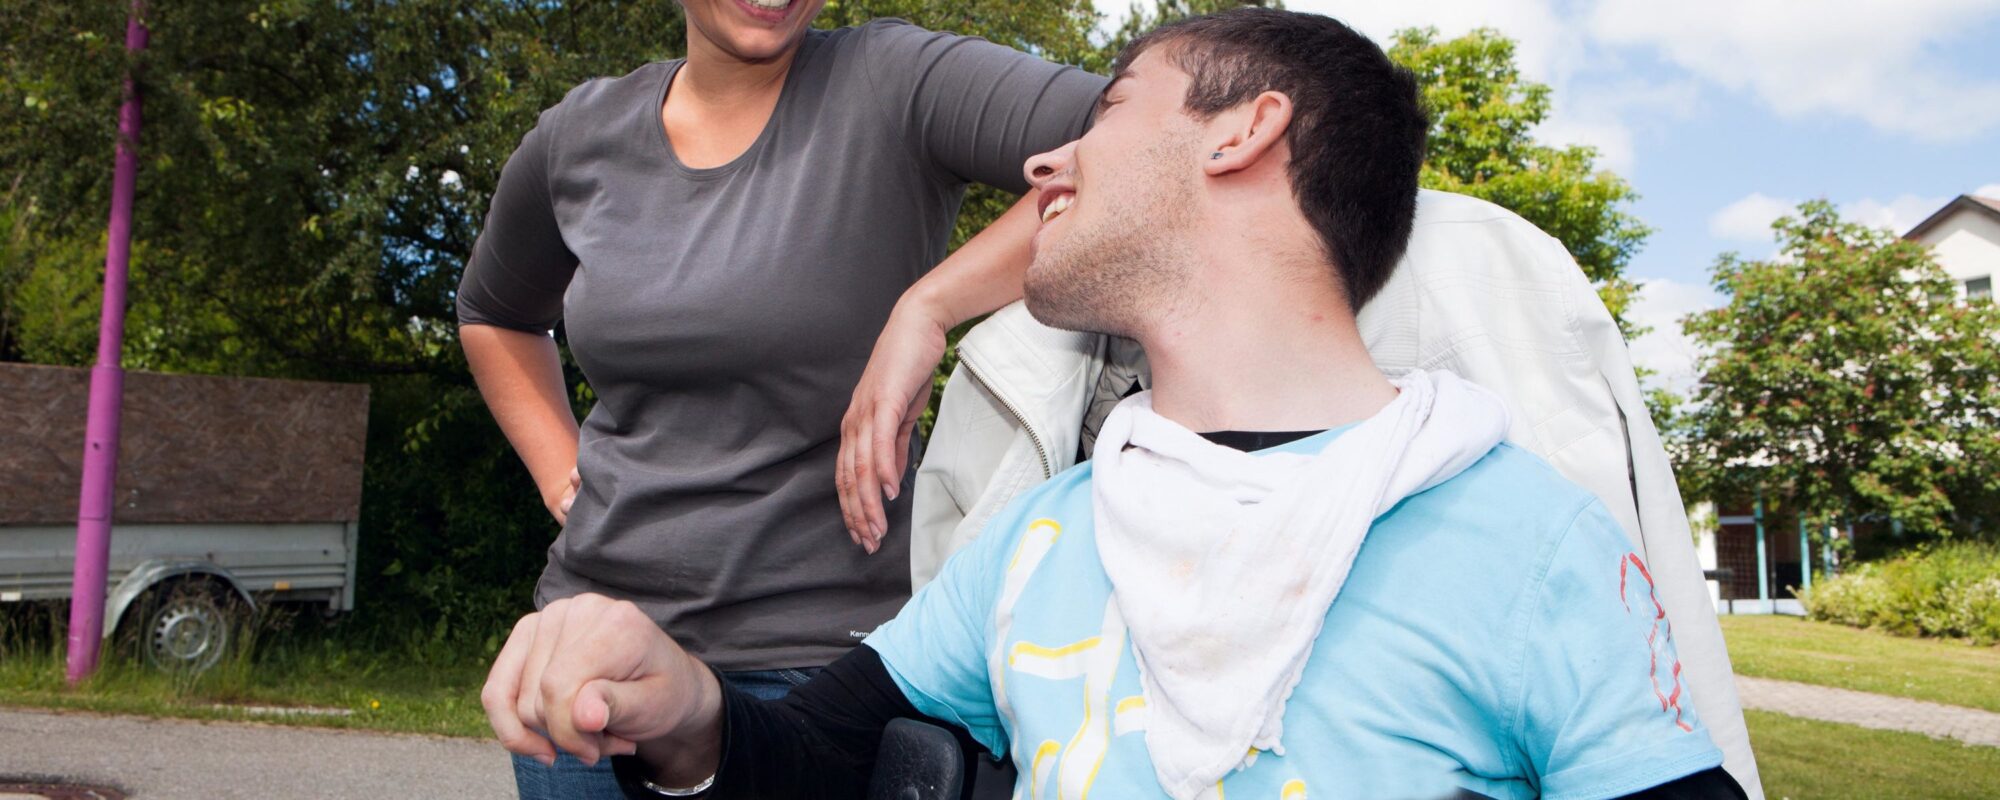 Mann im Rollstuhl lacht mit Frau neben ihm